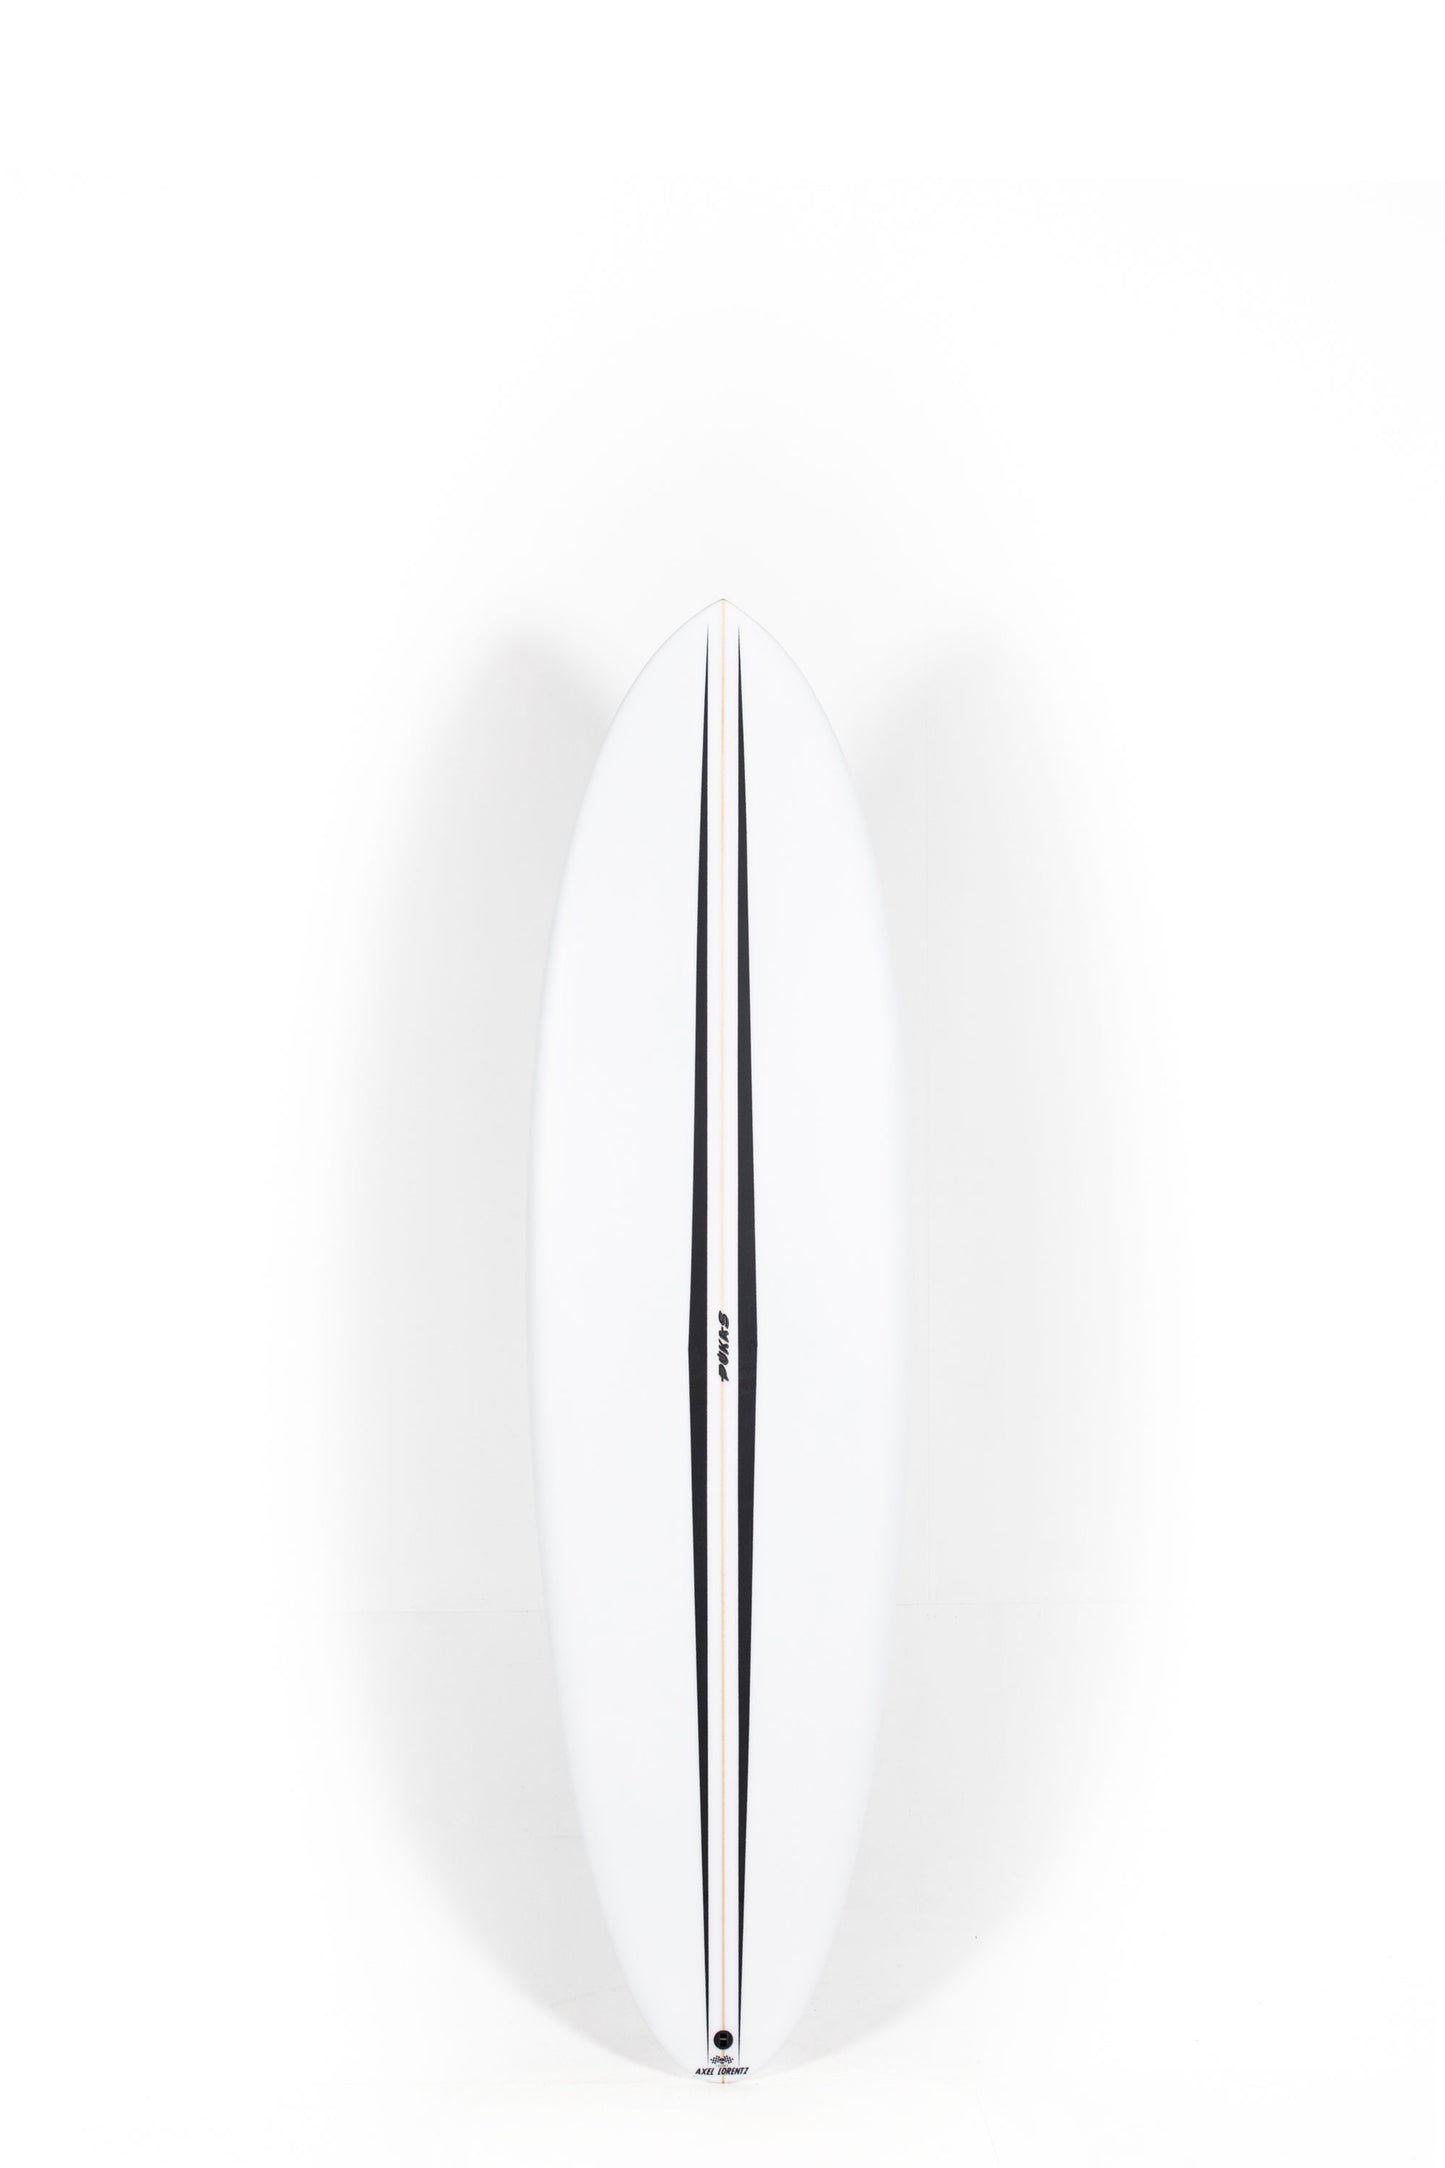 Pukas Surf Shop - Pukas Surfboard - LA CÔTE by Axel Lorentz - 6'8" x 21,25 x 2,88 - 44,42L -  AX09632